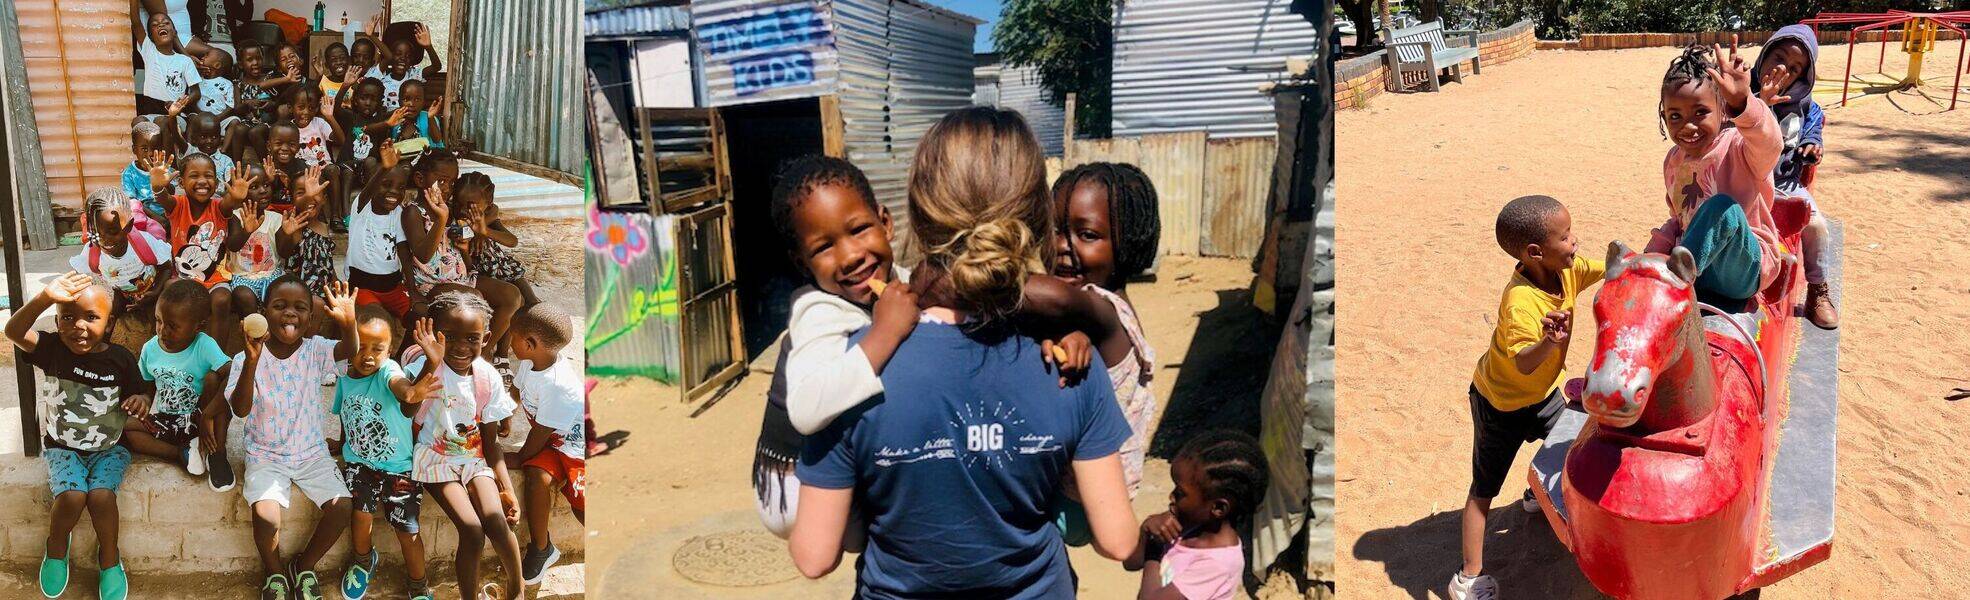 Volunteer work in Namibia kindergarten and preschool